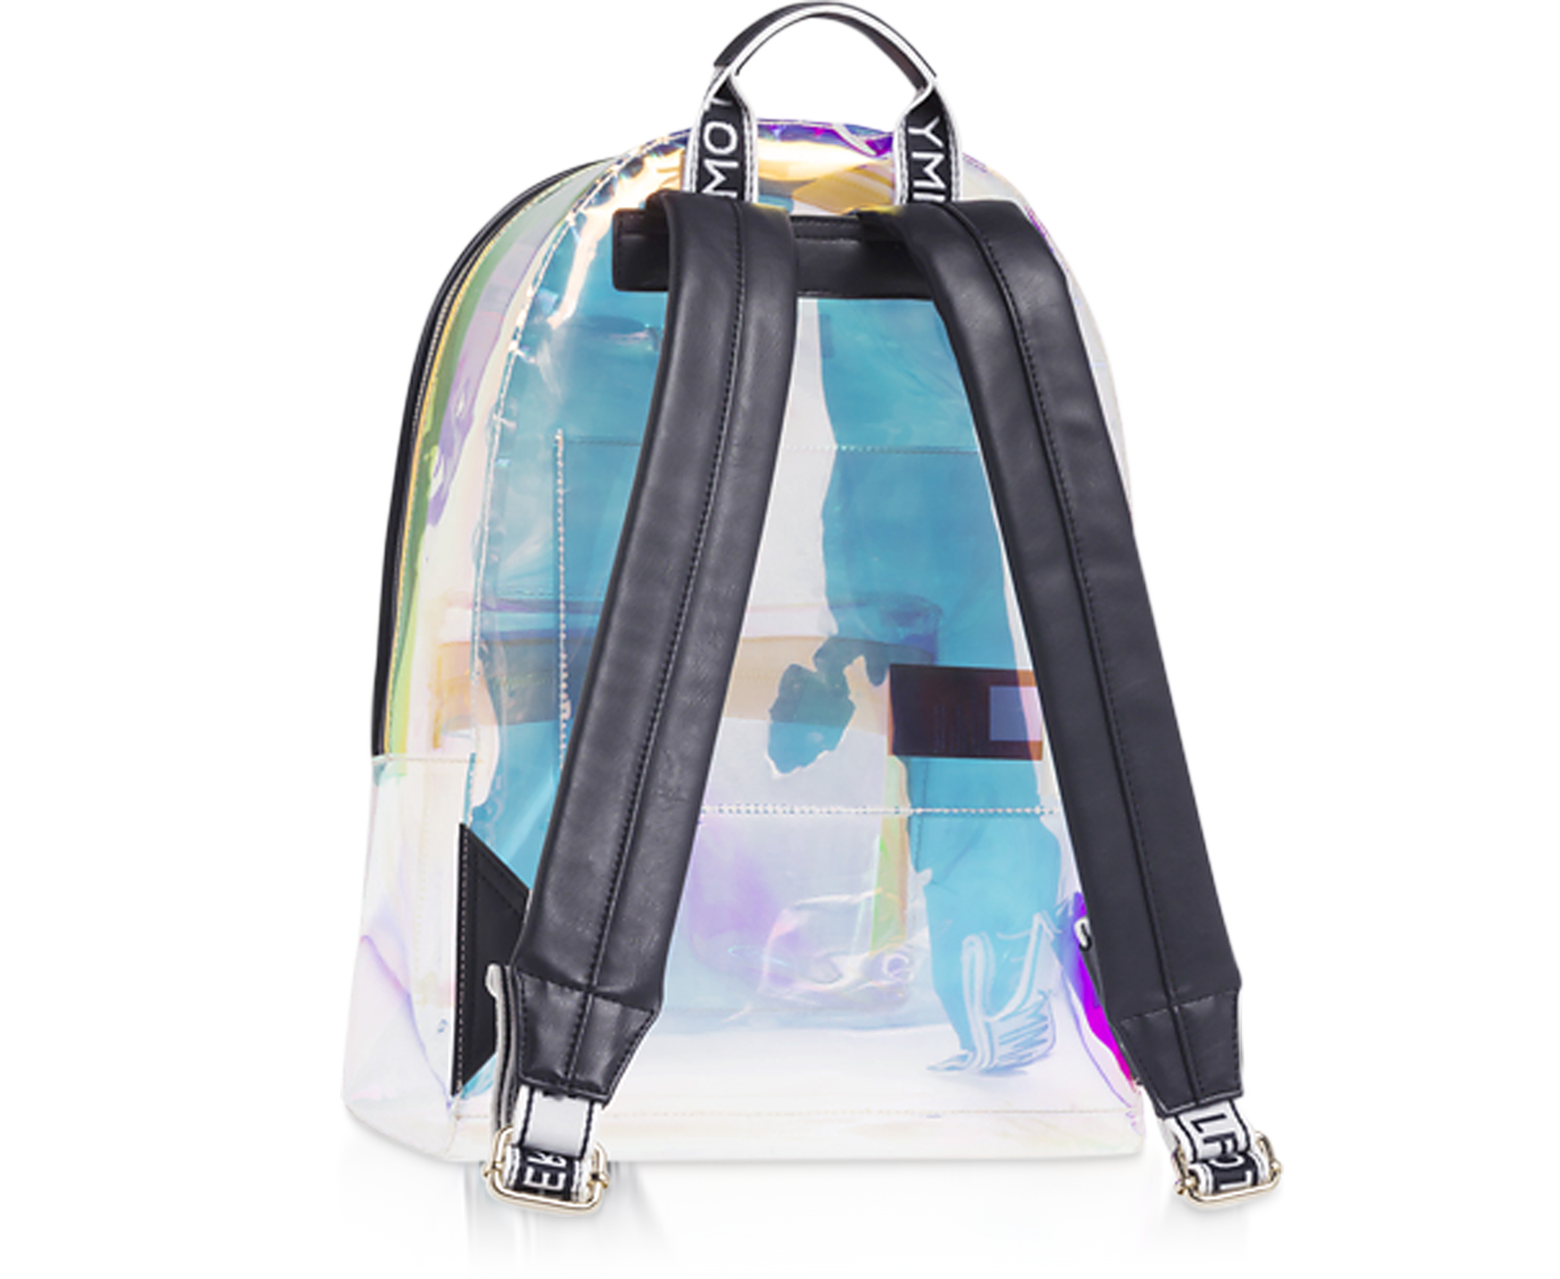 tommy hilfiger transparent backpack